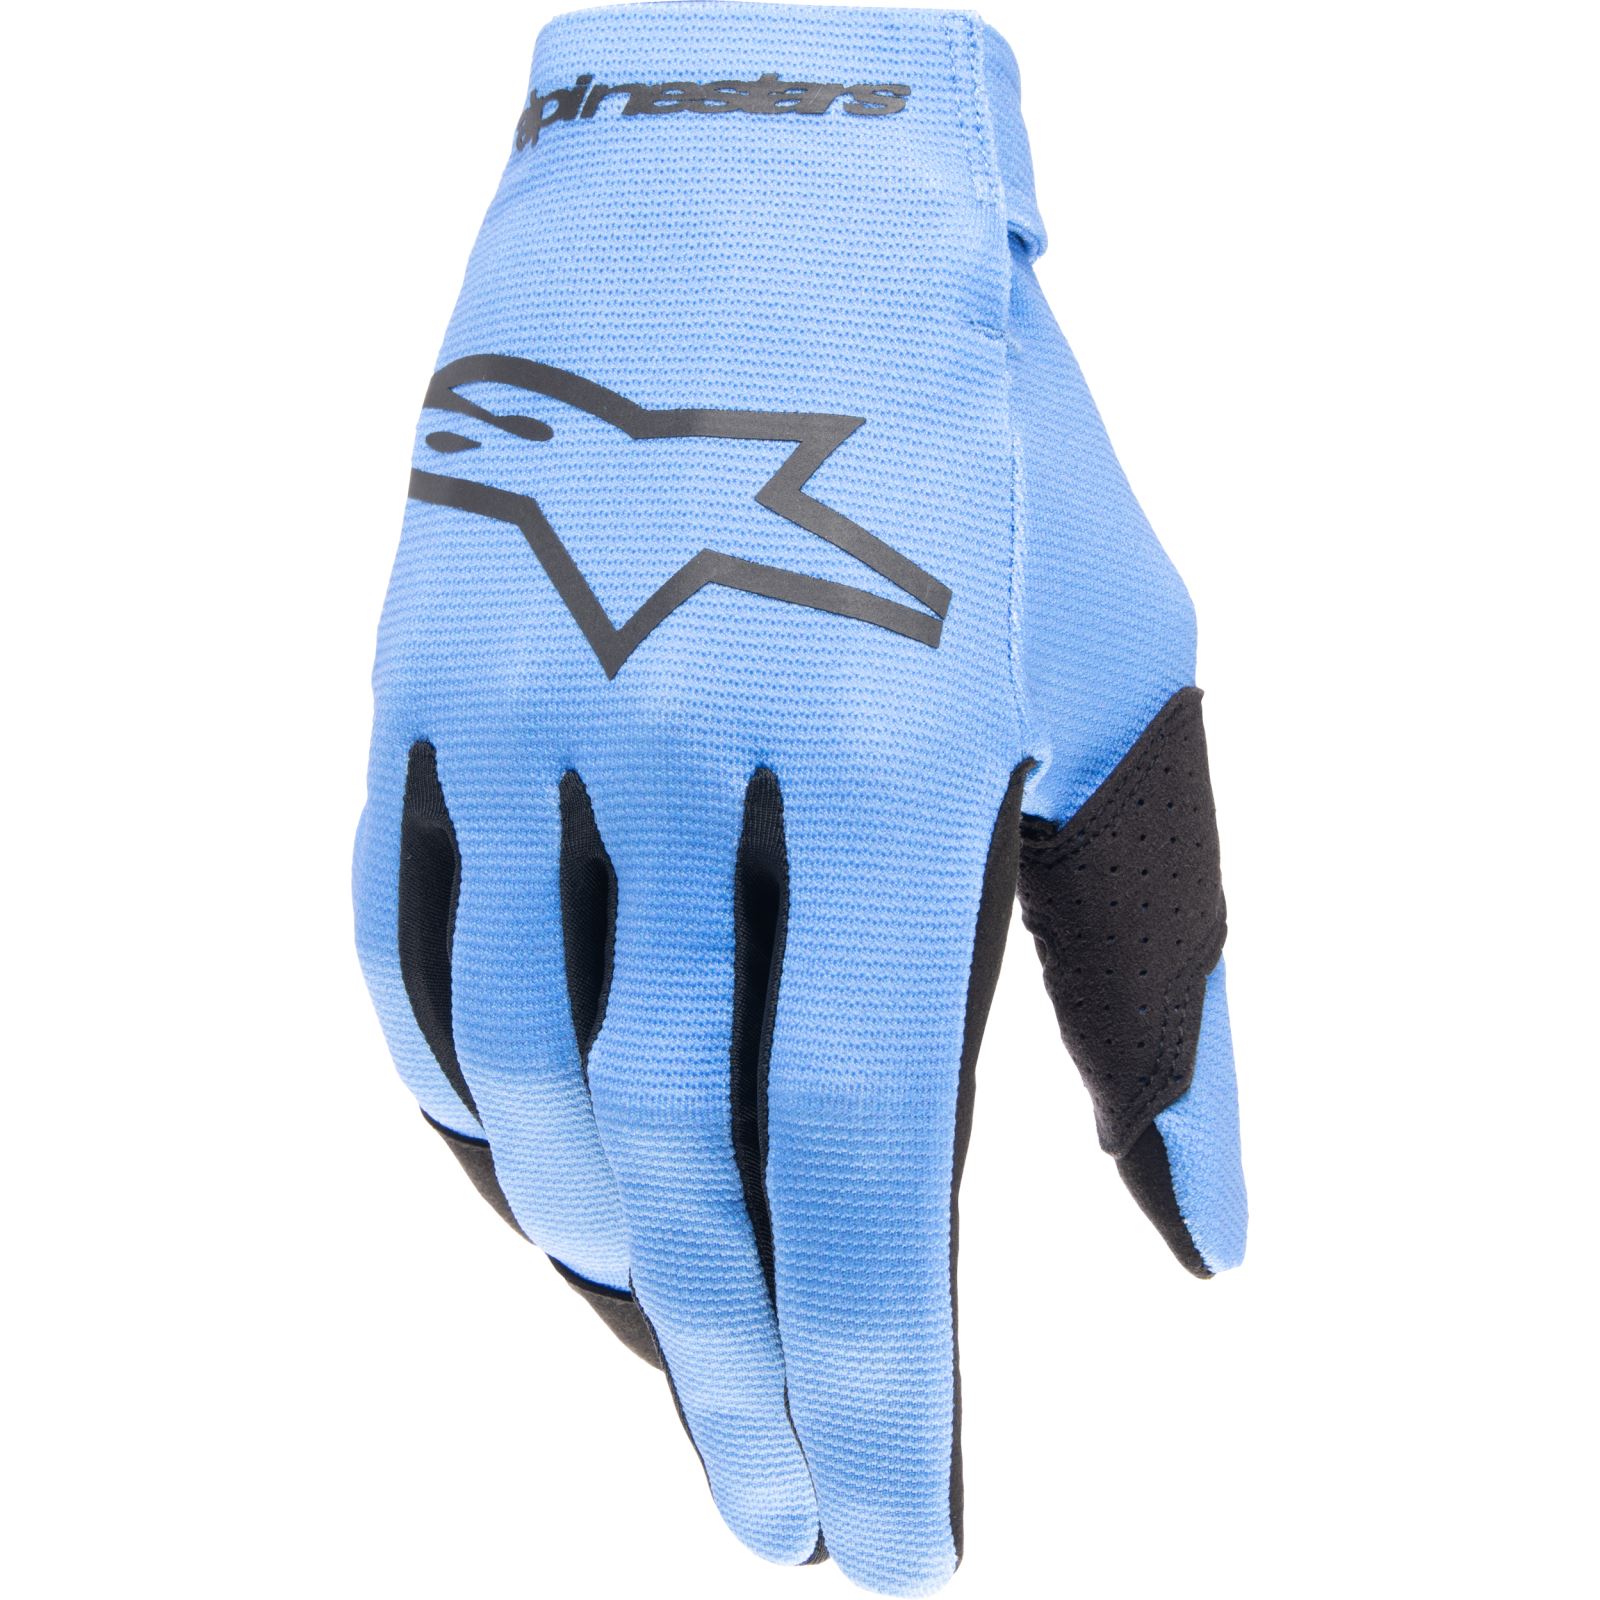 Alpinestars Radar Gloves - Light Blue/Black - Medium - Motorcycle